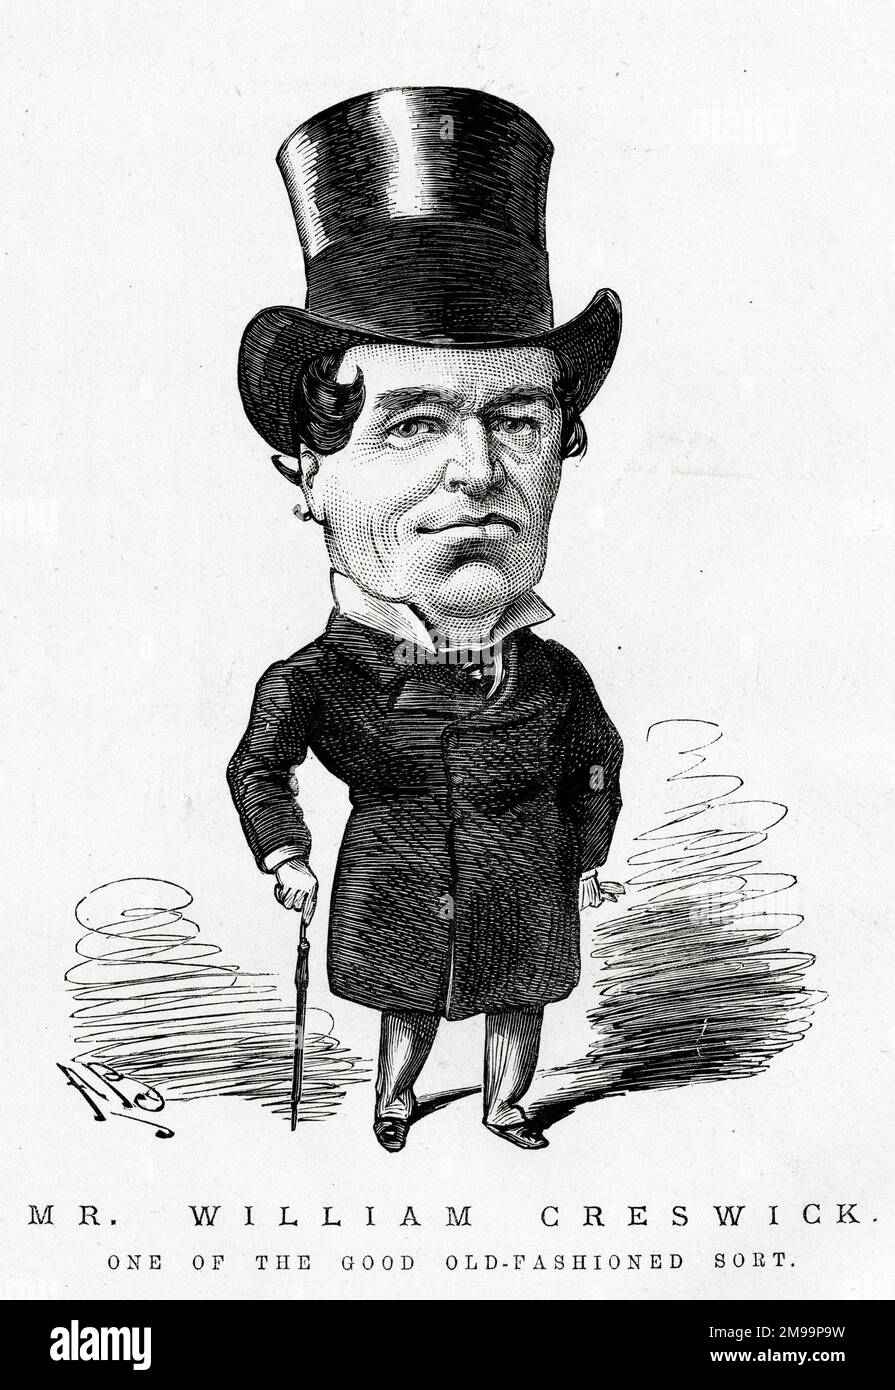 Caricatura, Sr. William Creswick (1813-1888), actor inglés - uno de los buenos a la antigua moda. Foto de stock